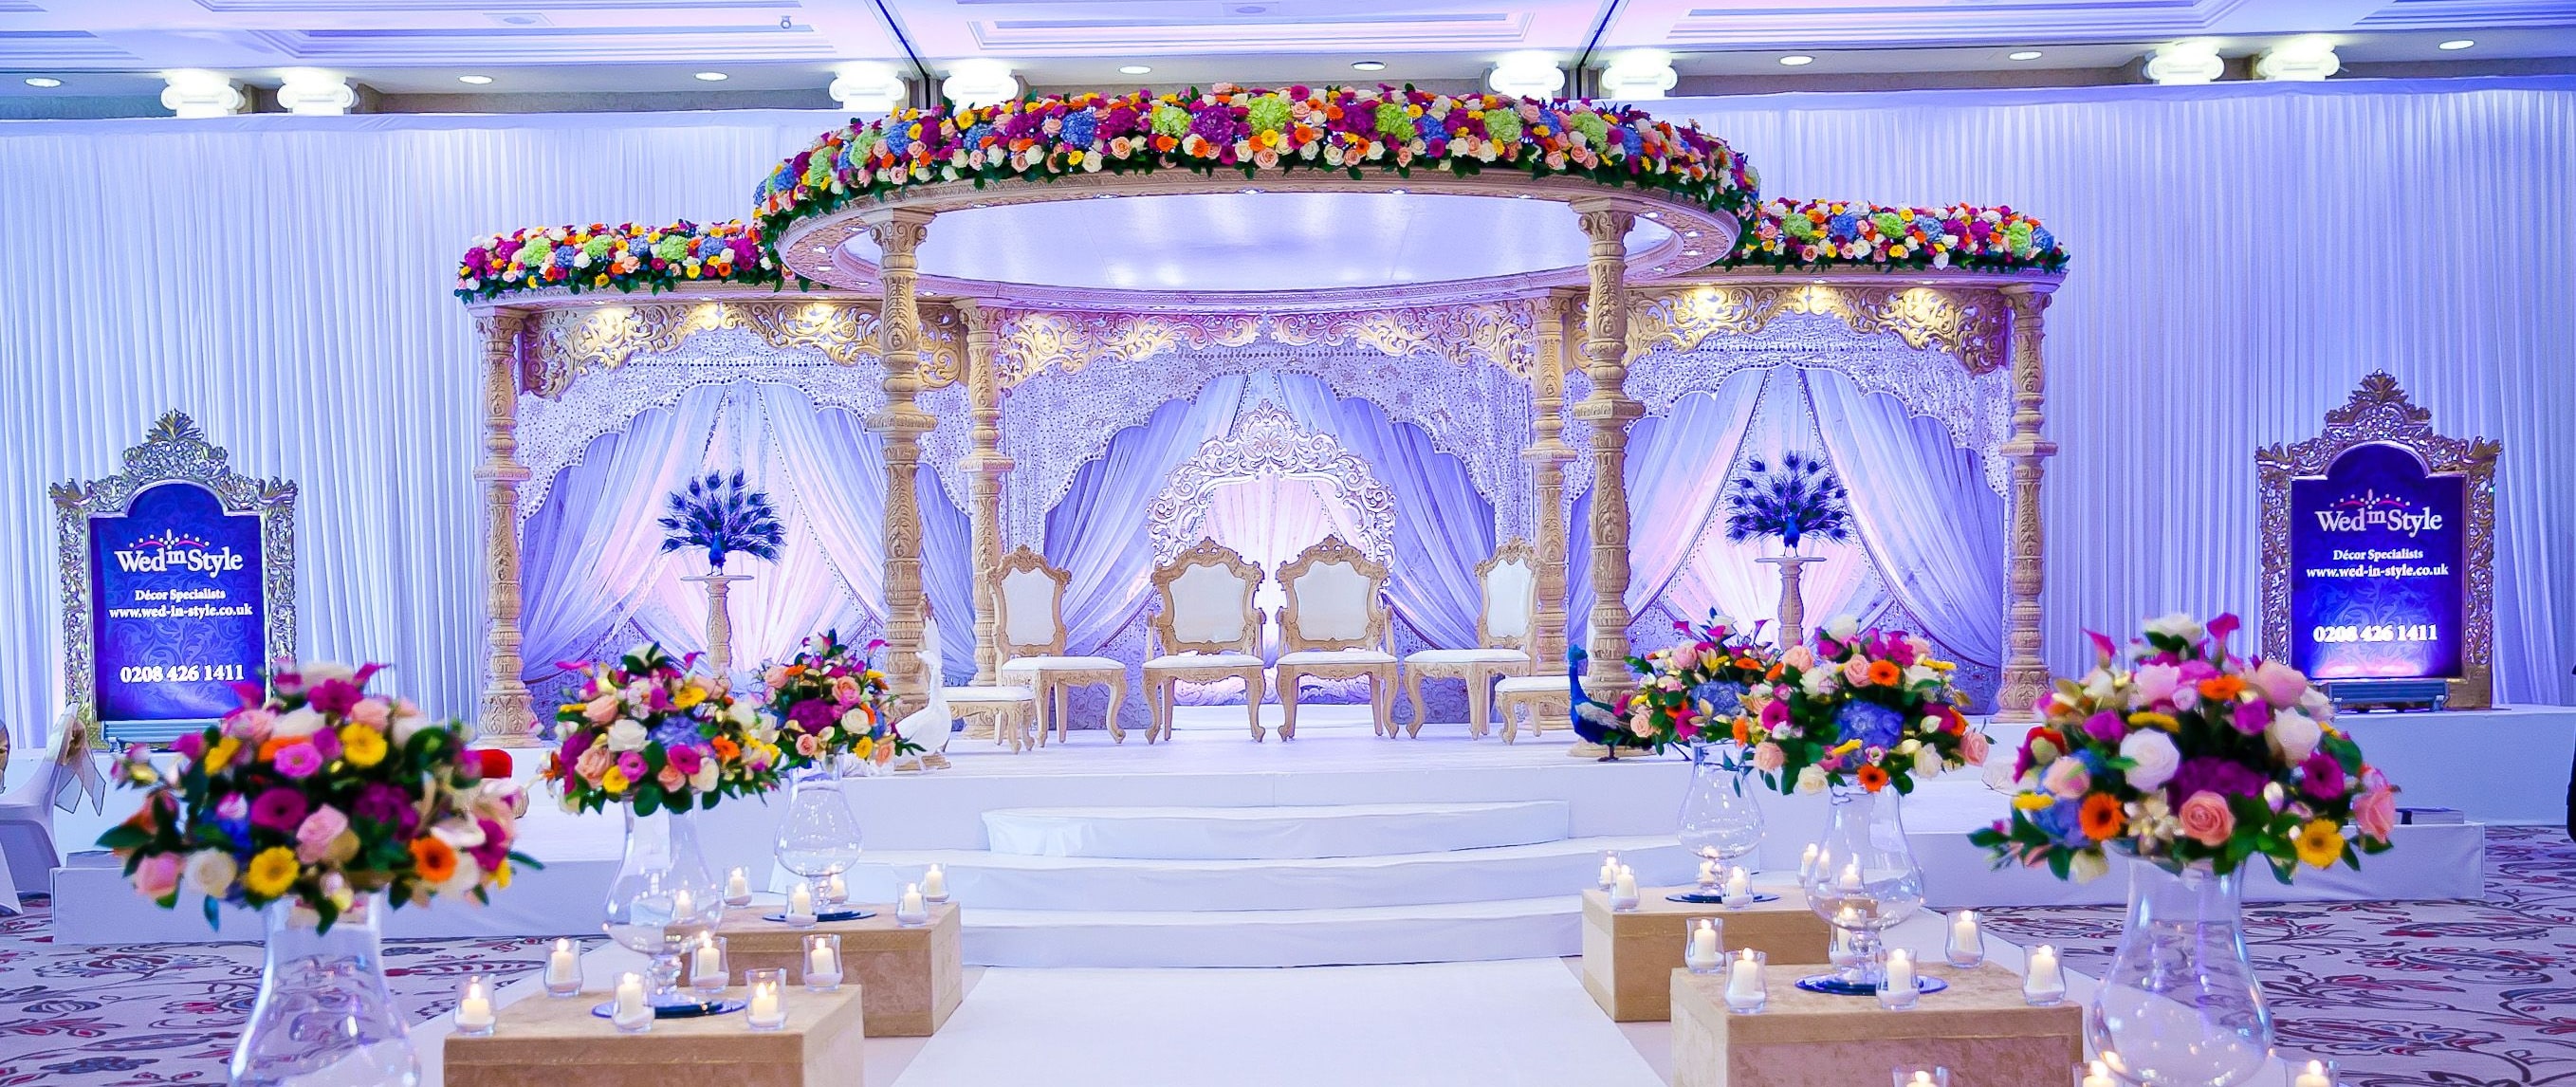 AJF, wedding event management, nalan.com.sg